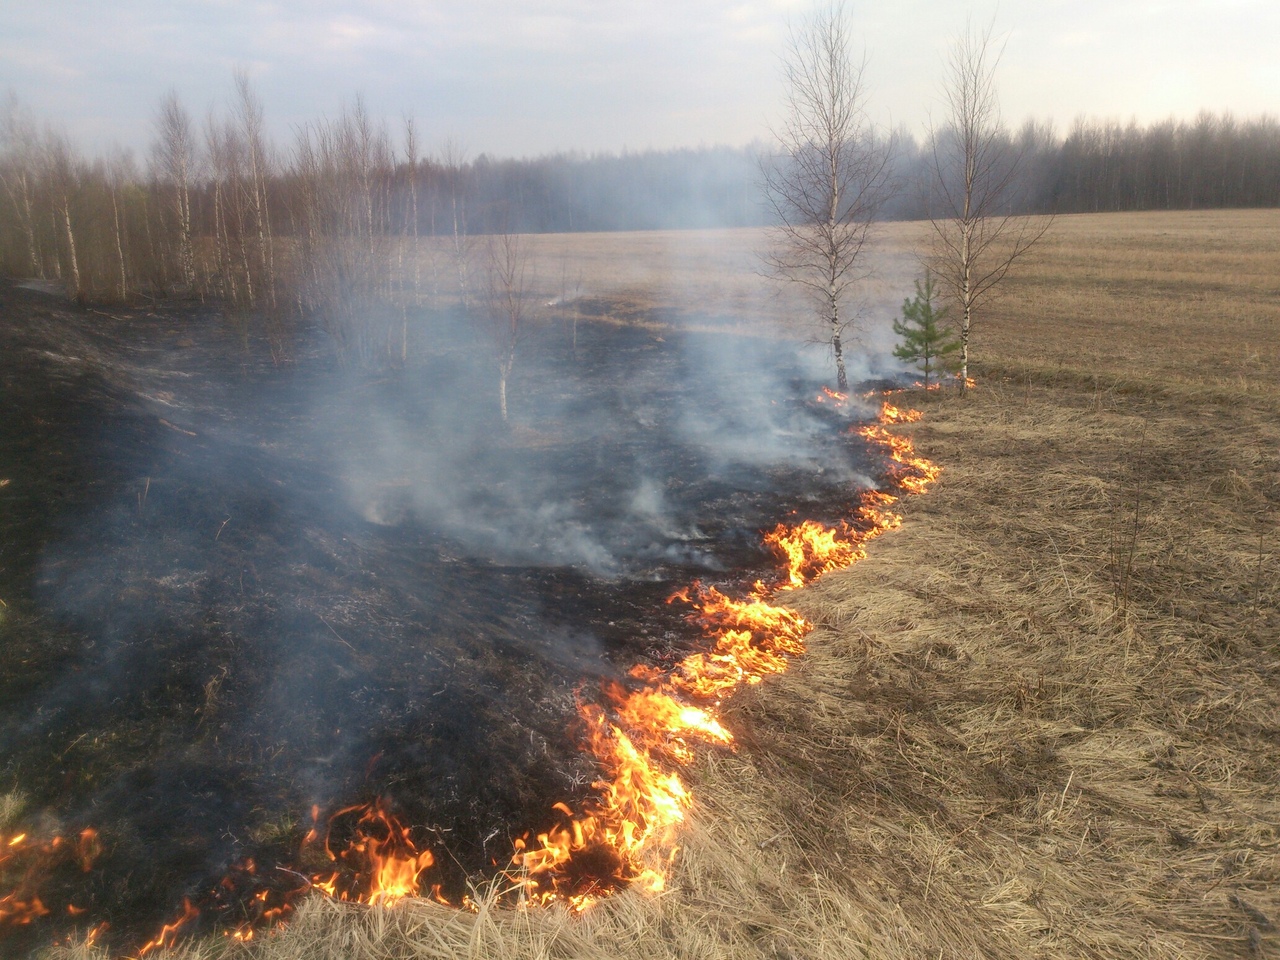 345 административных протоколов за палы травы составили смоленские пожарные в 2020 году